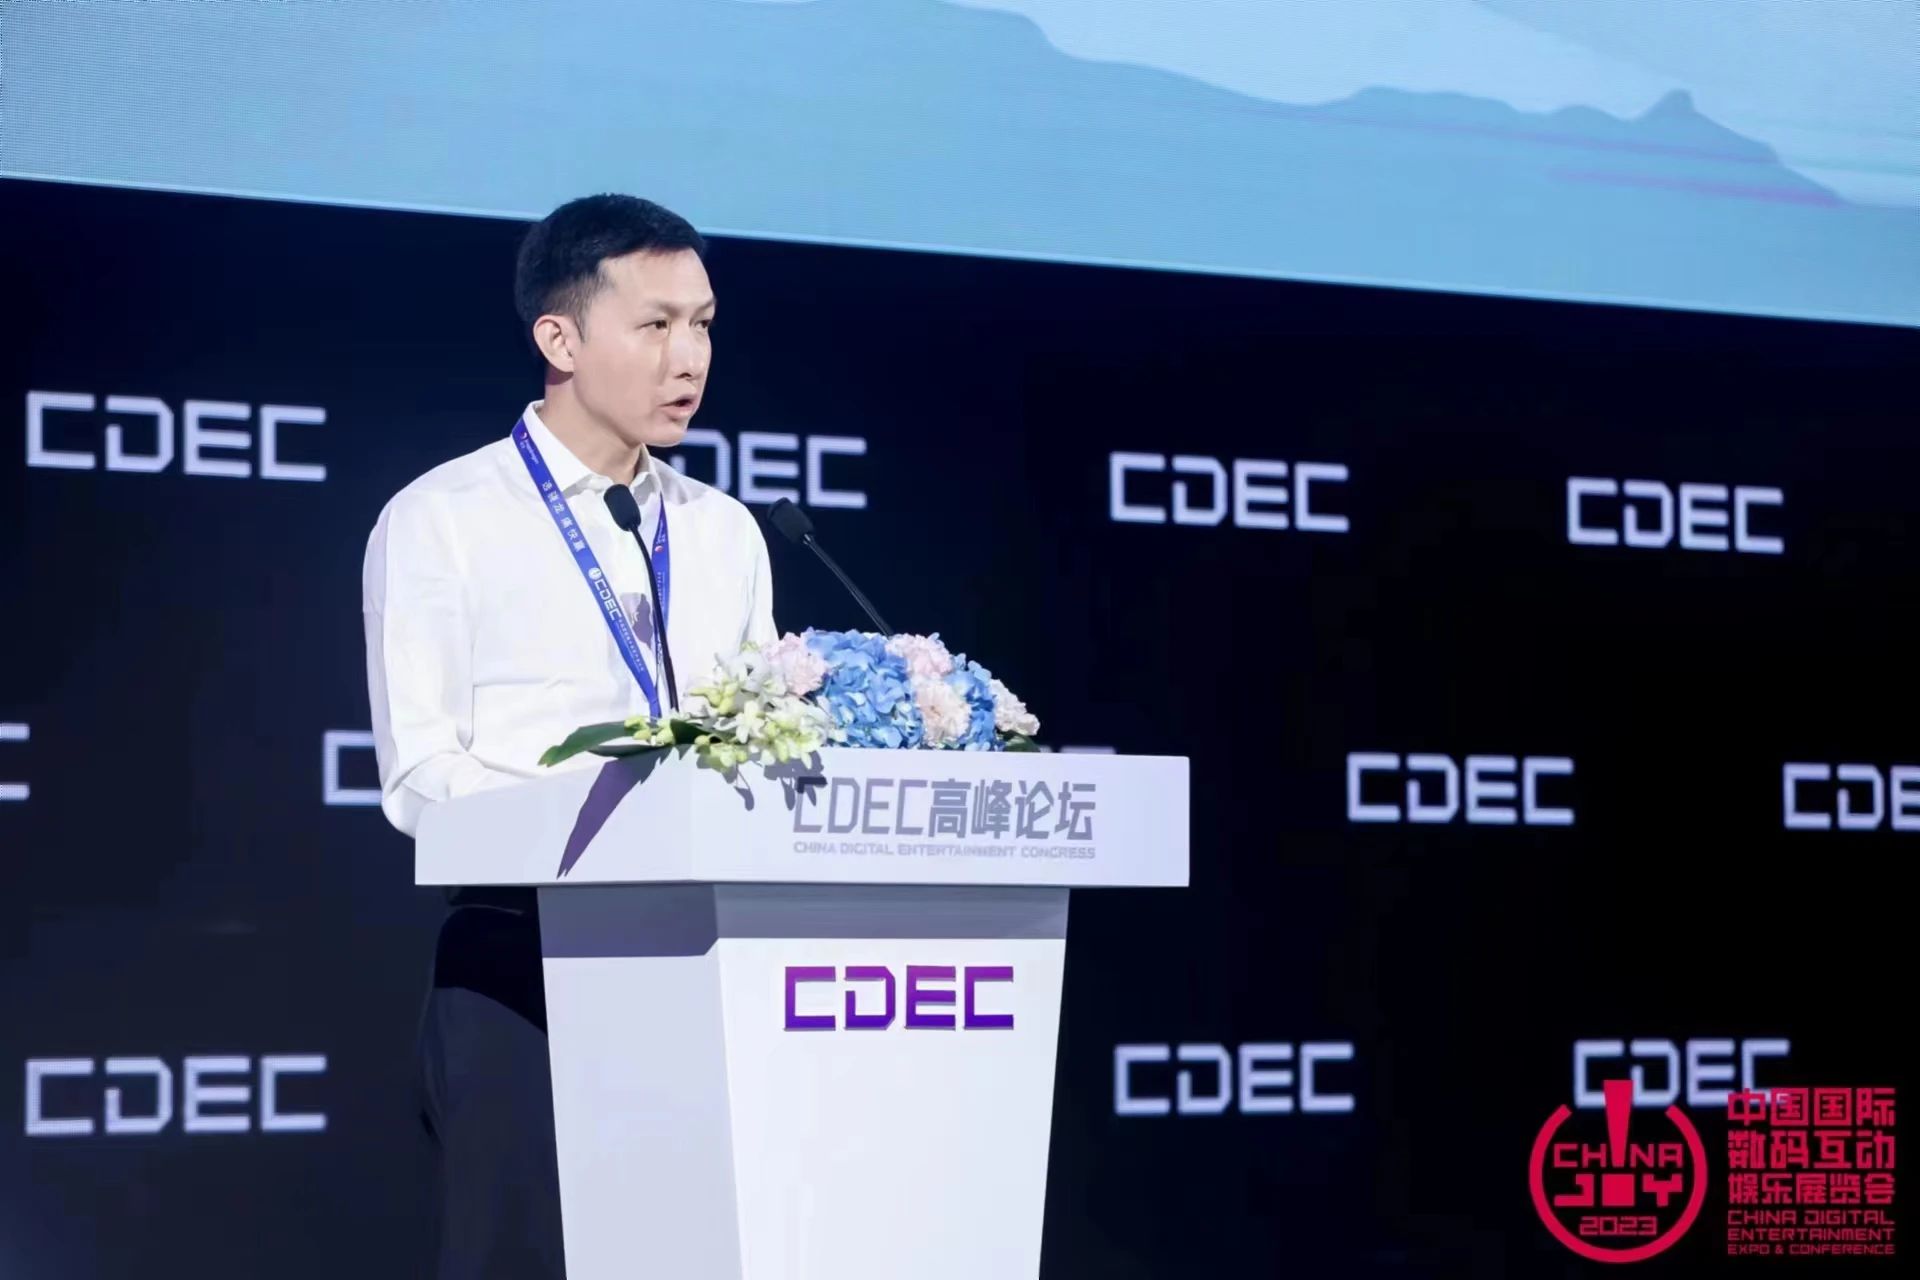 网易高级副总裁王怡：游戏产业走到发展分水岭，应抓住技术创新窗口期